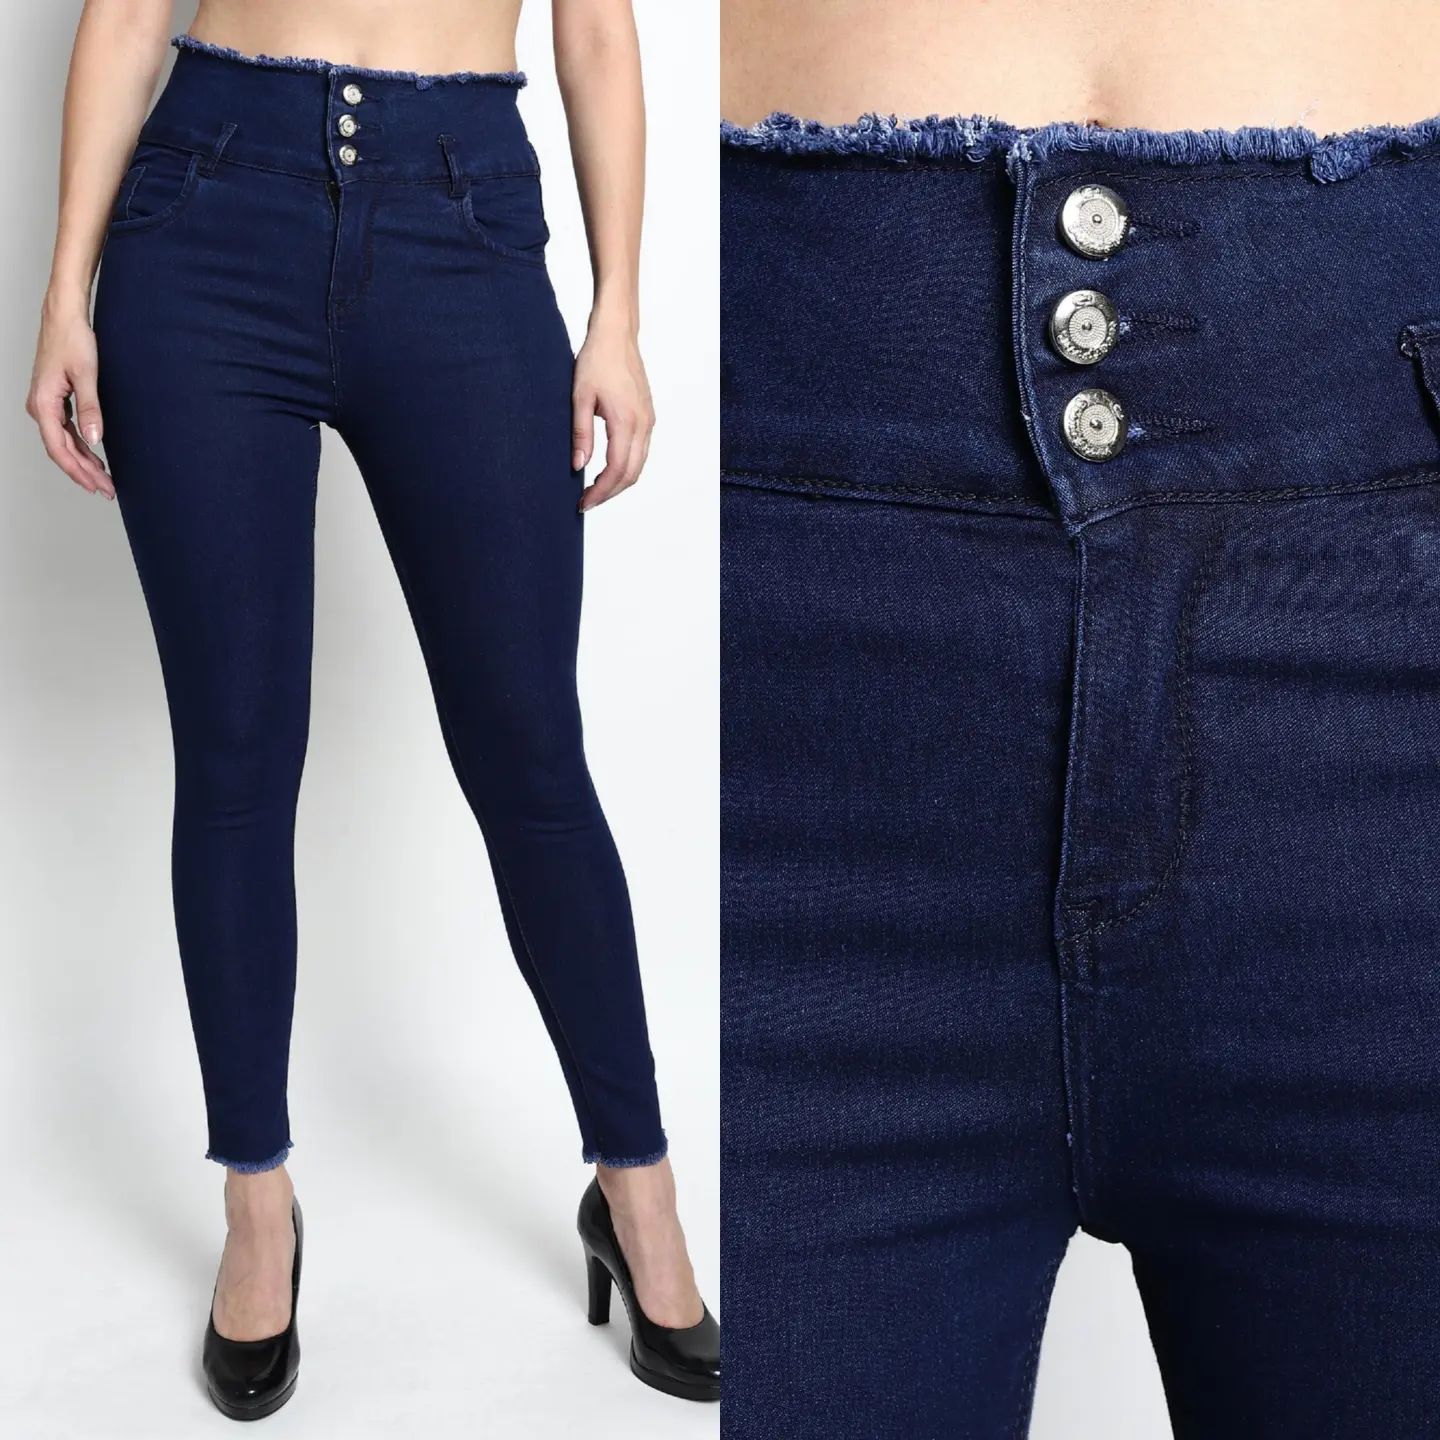 Антитрендові джинси, яким не місце у гардеробі сучасної жінки: фото